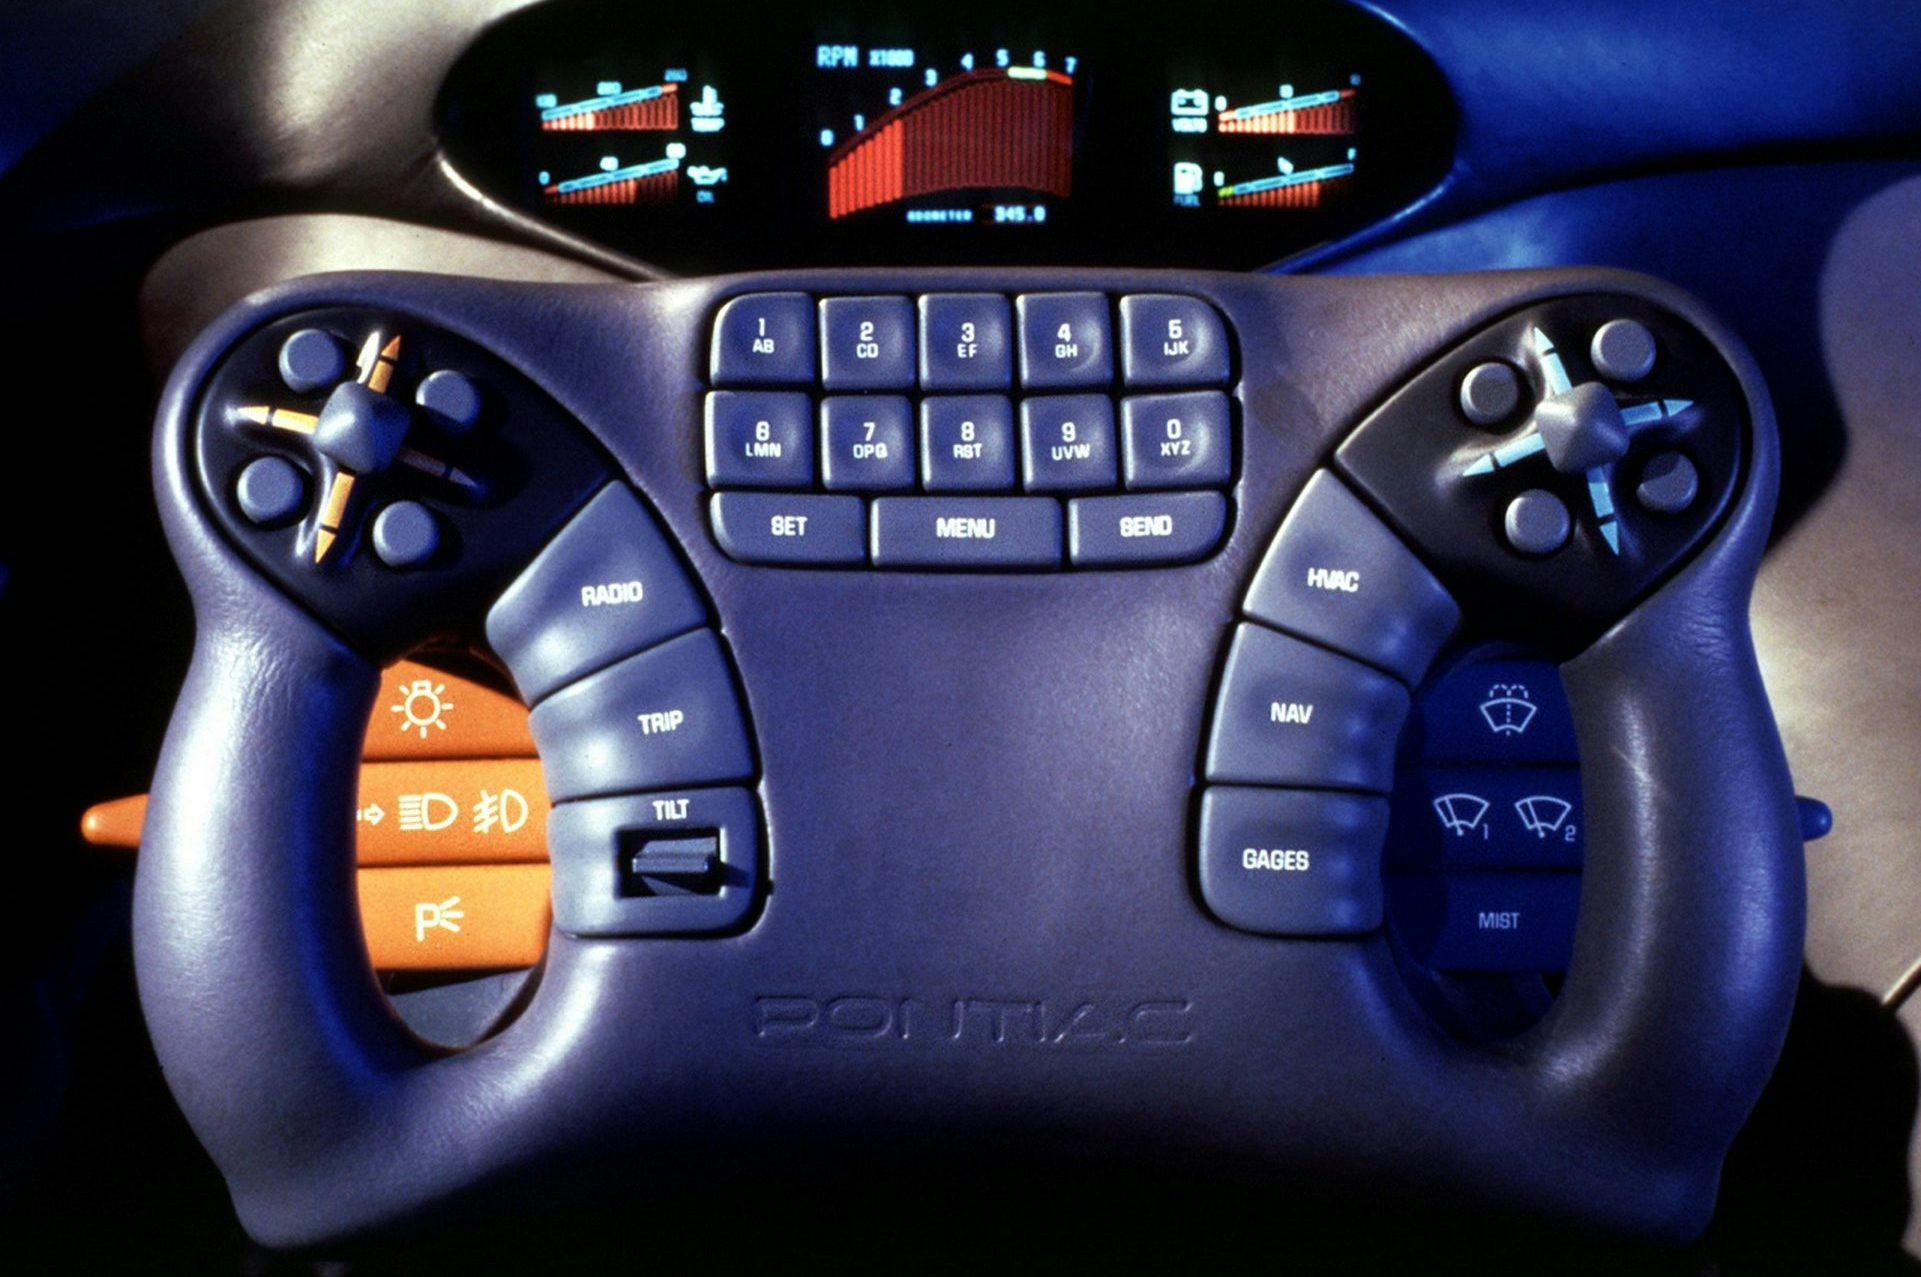 Pontiac Pursuit concept car interior steering wheel closeup